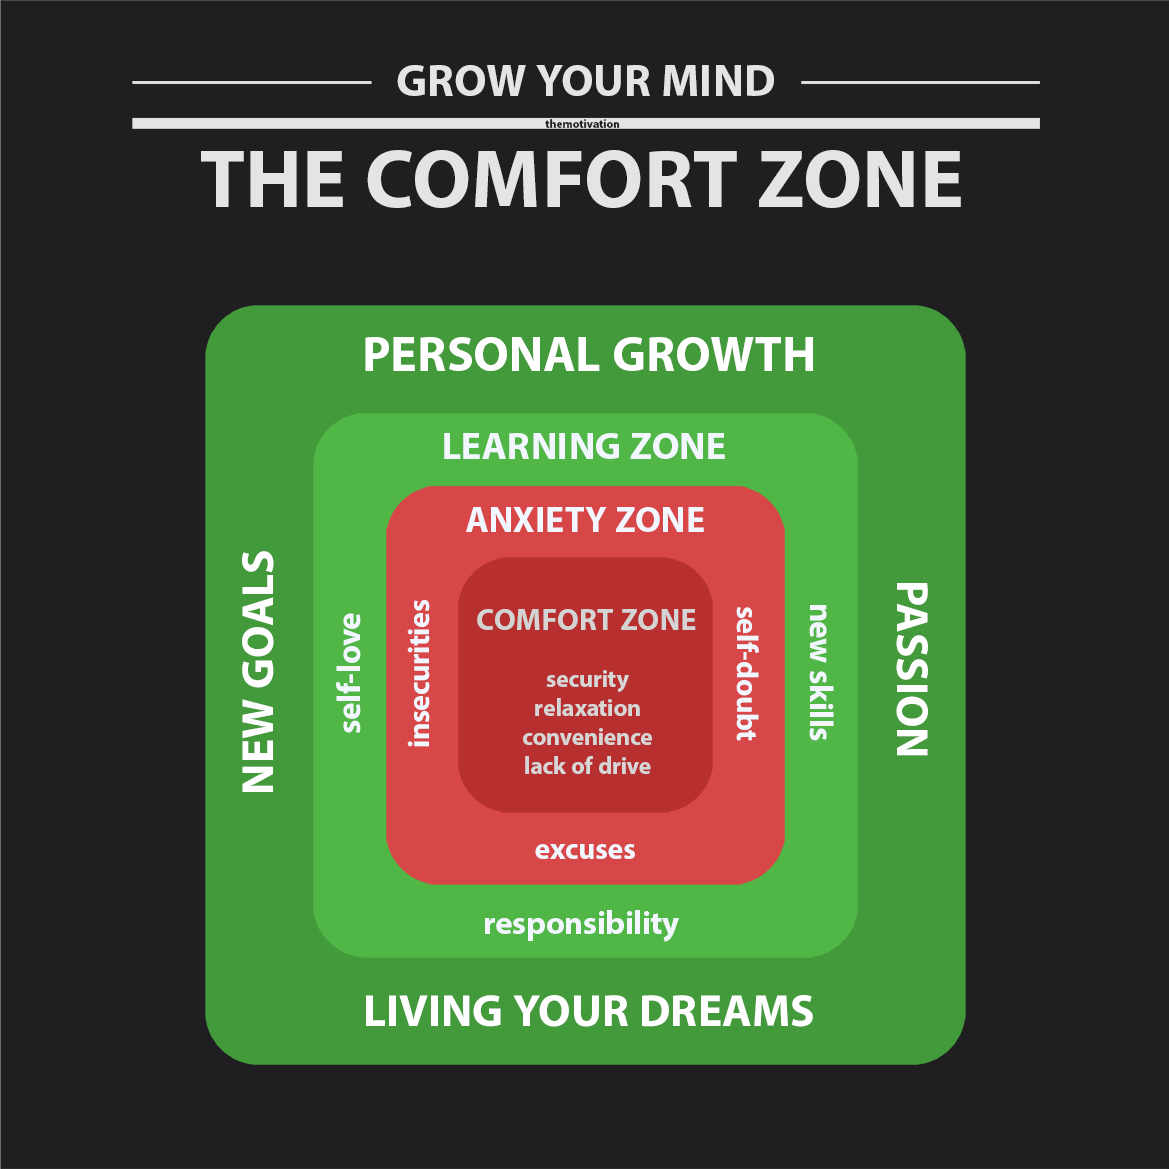 motivationsbild-wandbild-kaufen-mindset-erfolg-GROW-YOUR-MIND-vorschaubild-The-Comfort-Zone-1-themotivation.de